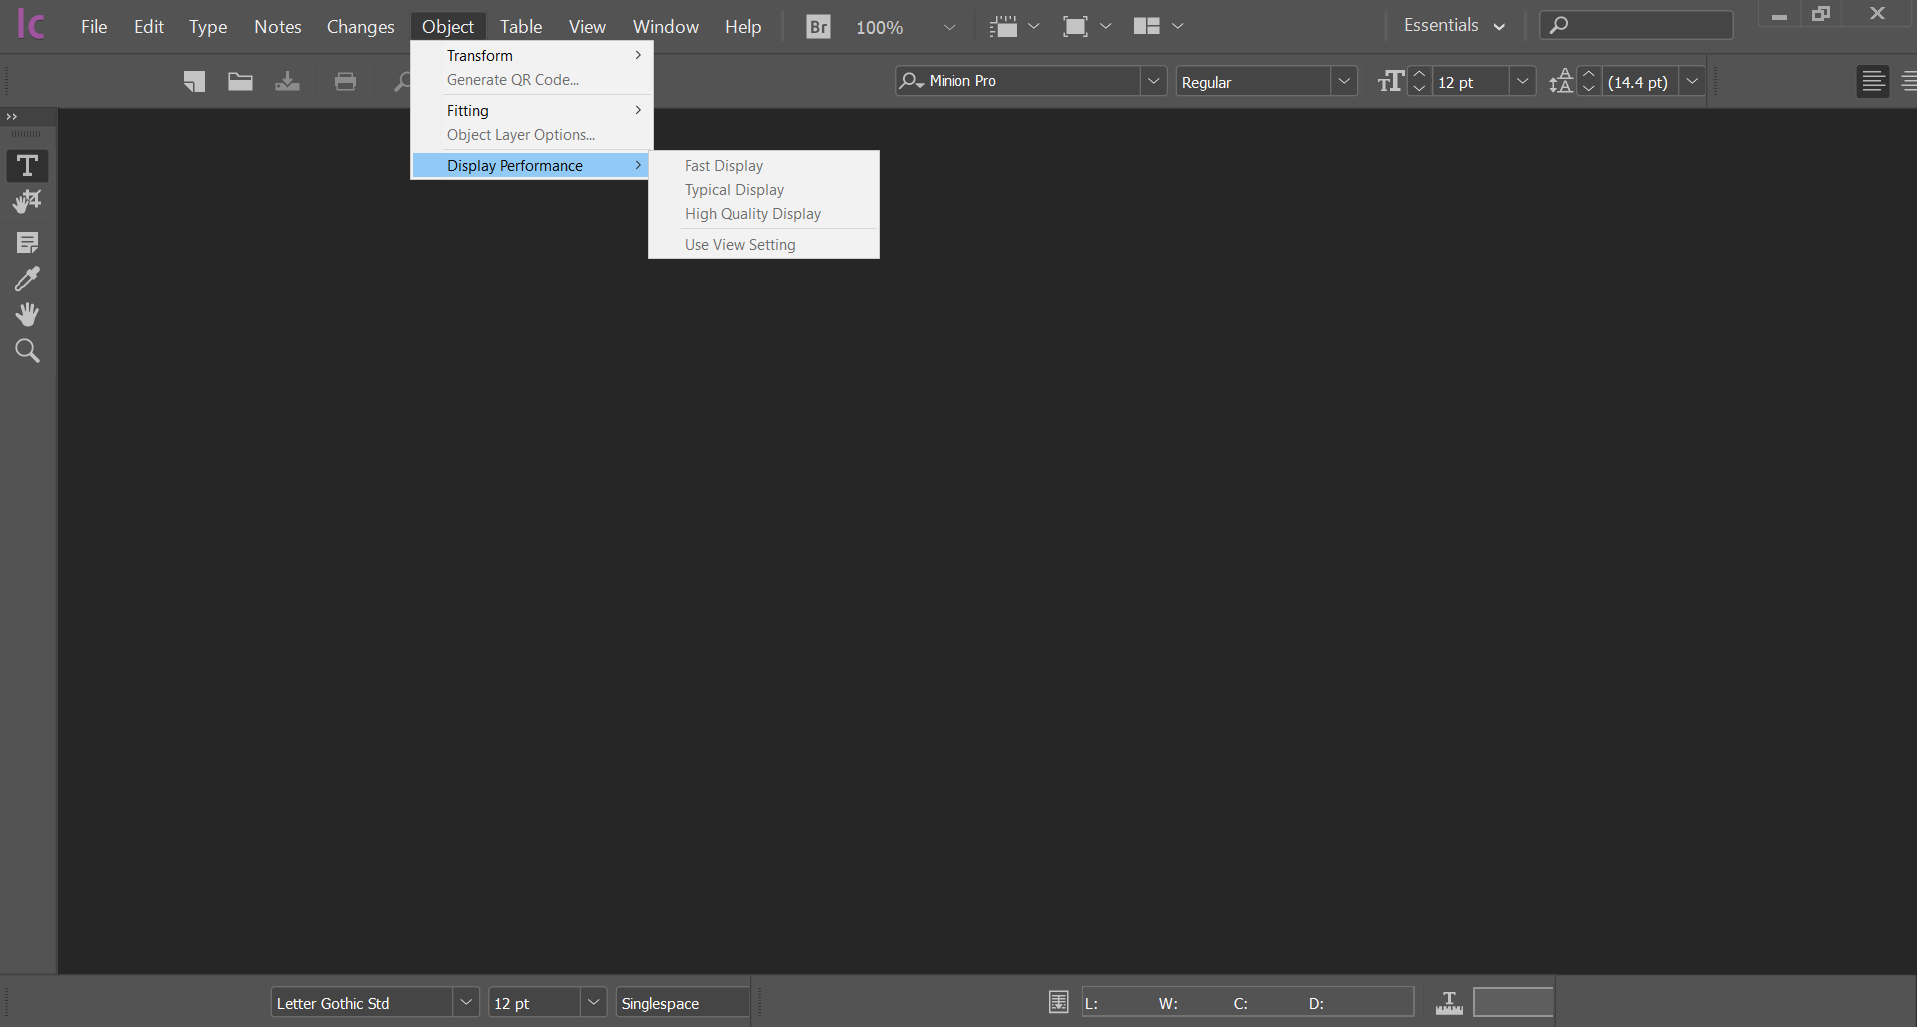 instal the last version for mac Adobe InCopy 2023 v18.5.0.57